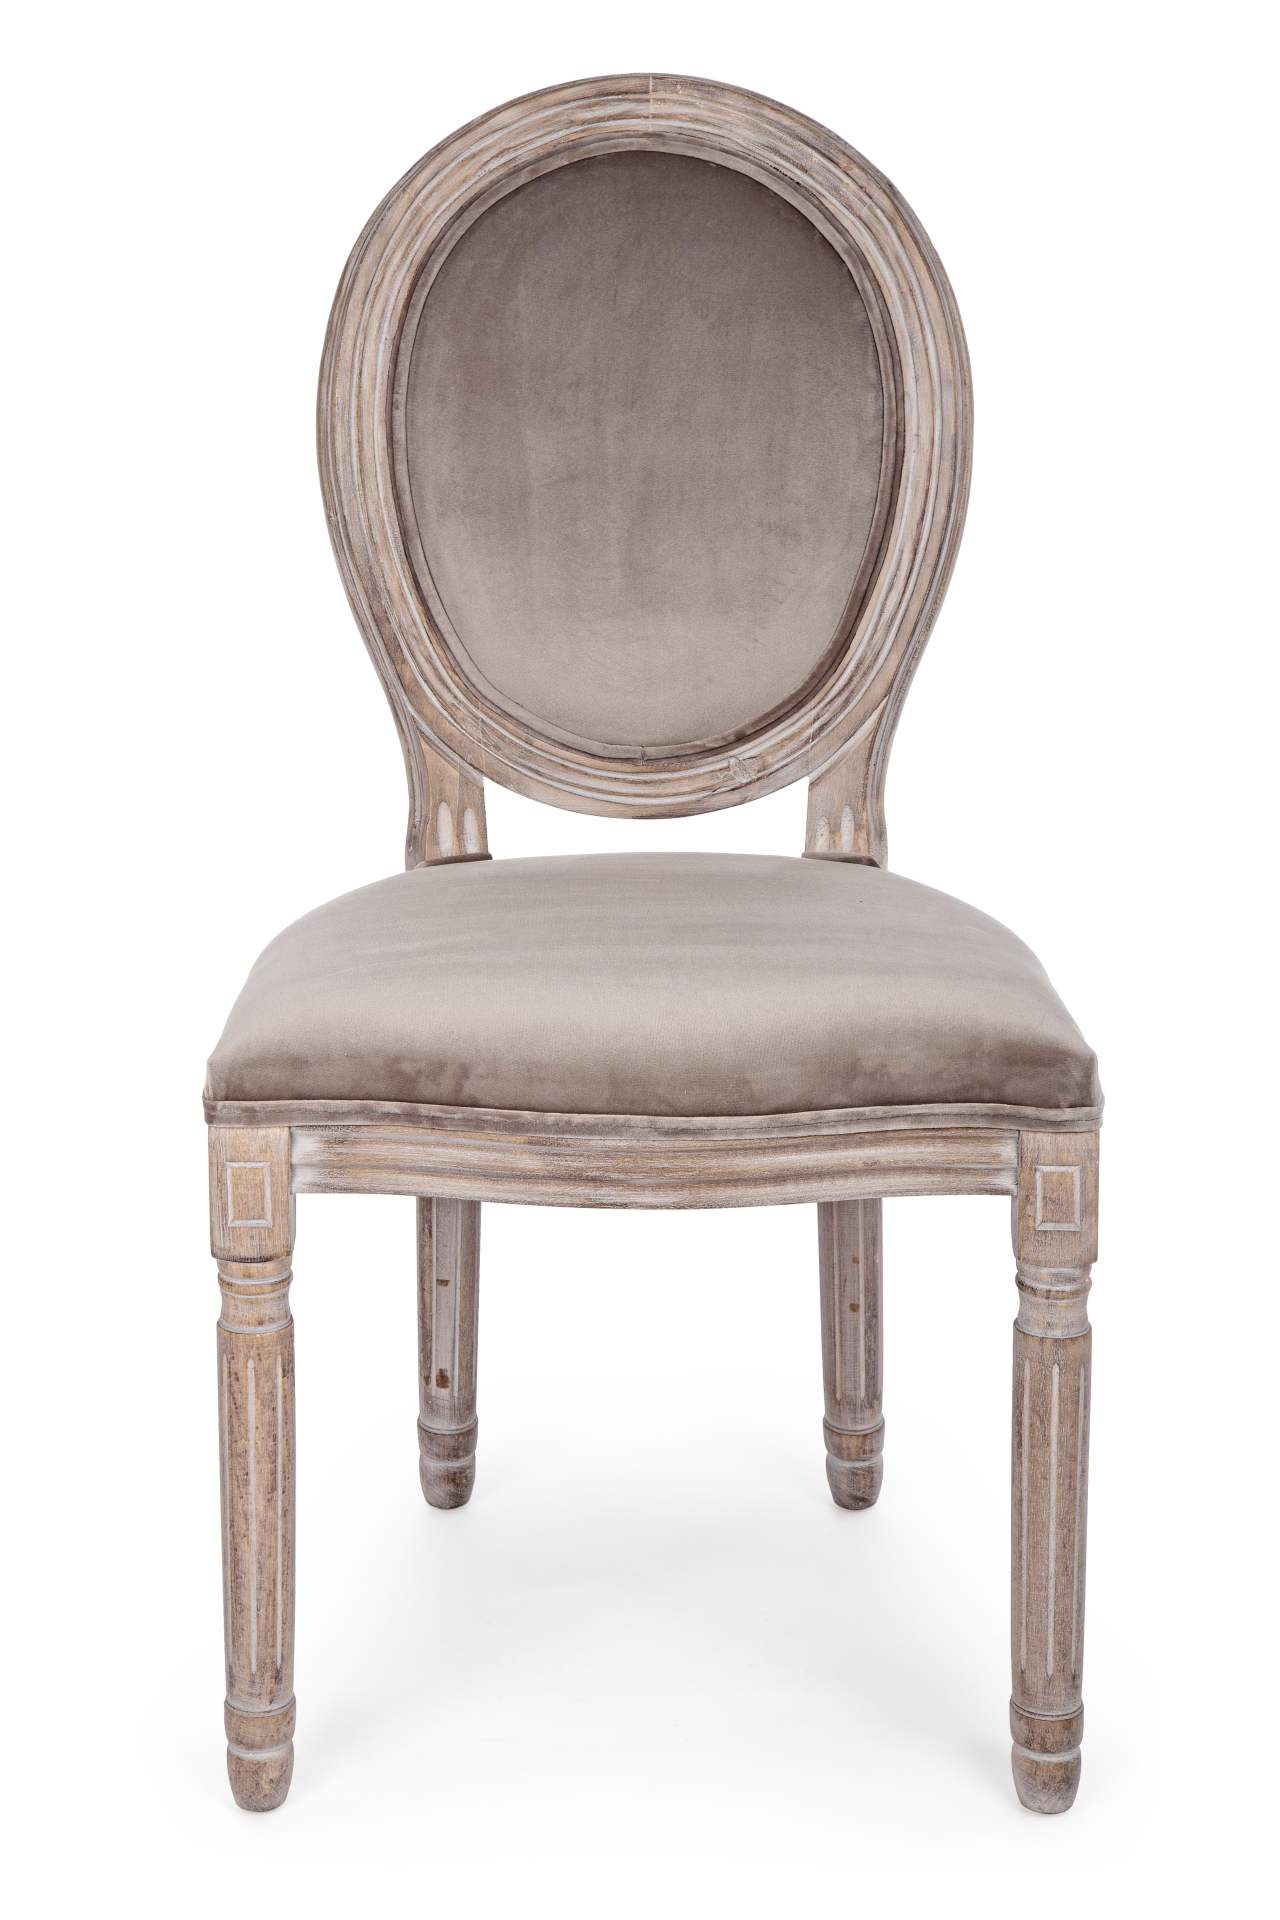 Der Stuhl Mathilde überzeugt mit seinem klassischem Design gefertigt wurde der Stuhl aus Birkenholz, welches natürlich gehalten ist. Die Sitz- und Rückenfläche ist aus einem Stoff-Bezug, welcher einen Taupe Farbton besitzt und in einer Samt-Optik ist. Die